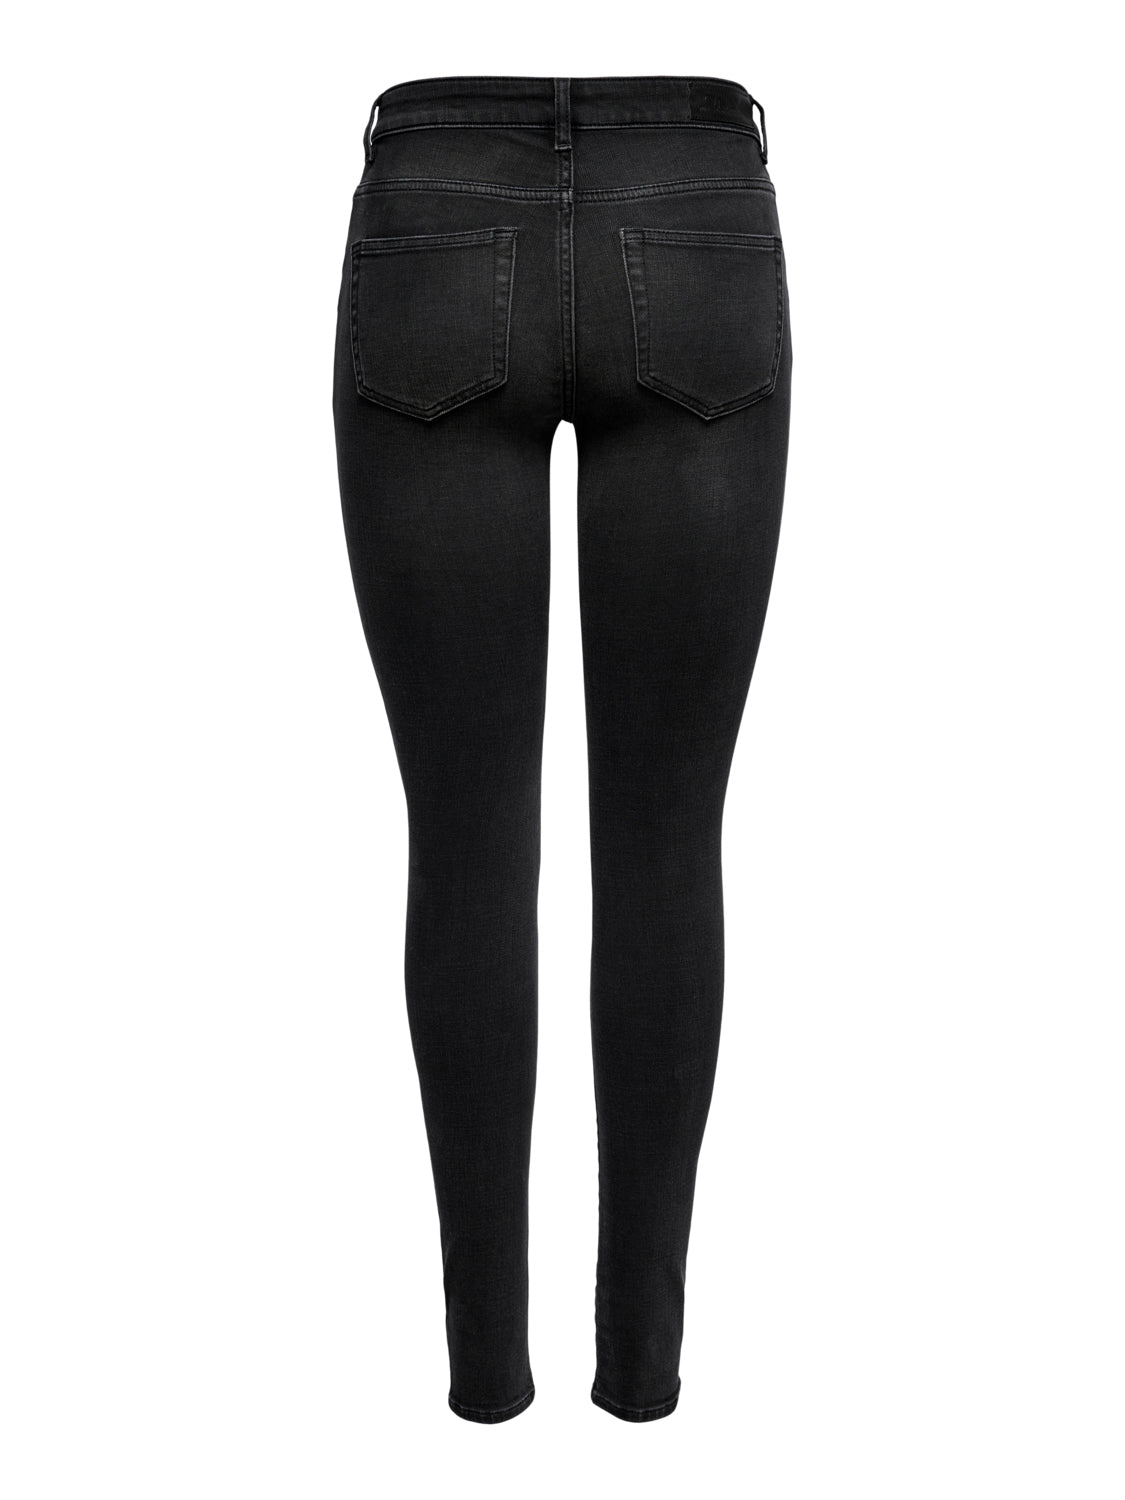 ONLANNE Jeans - Black